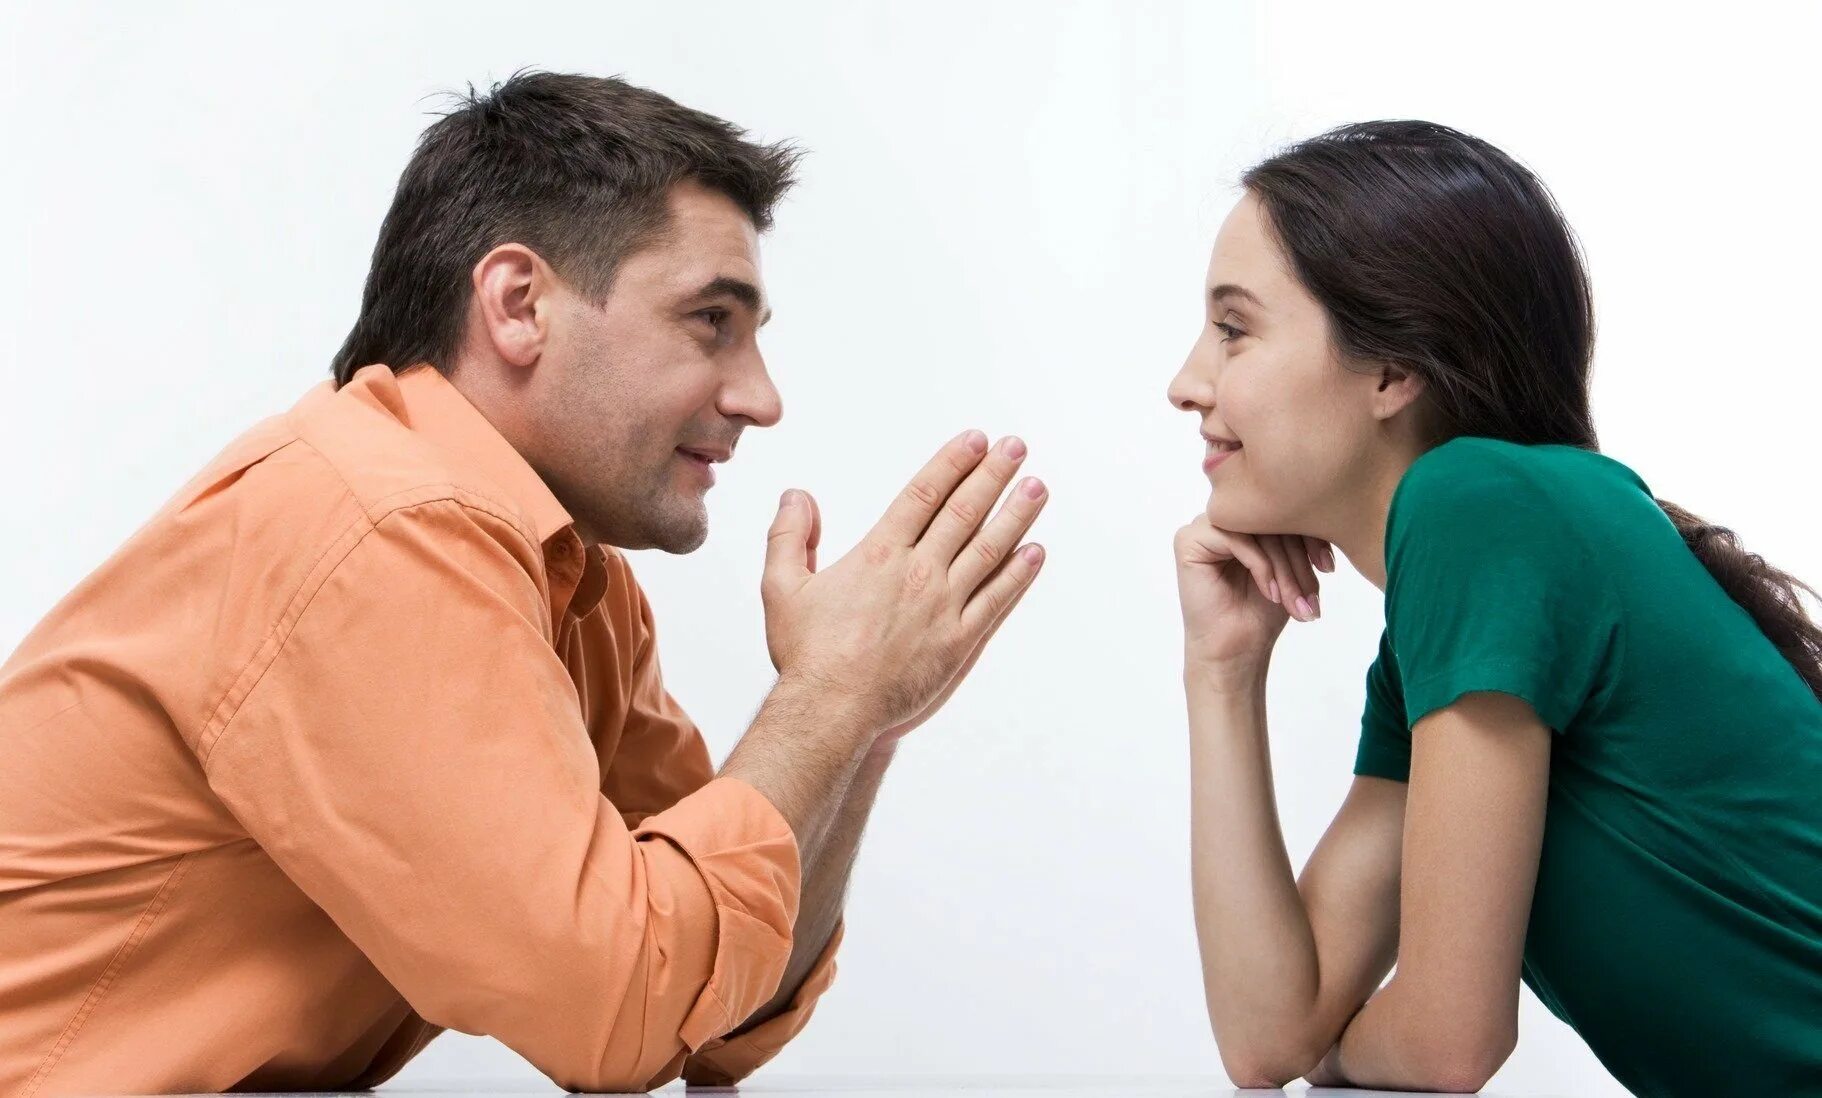 Постоянно внимание мужчины. Разговор между мужчиной и женщиной. Общение людей. Взаимопонимание в общении. Беседа мужчины и женщины.